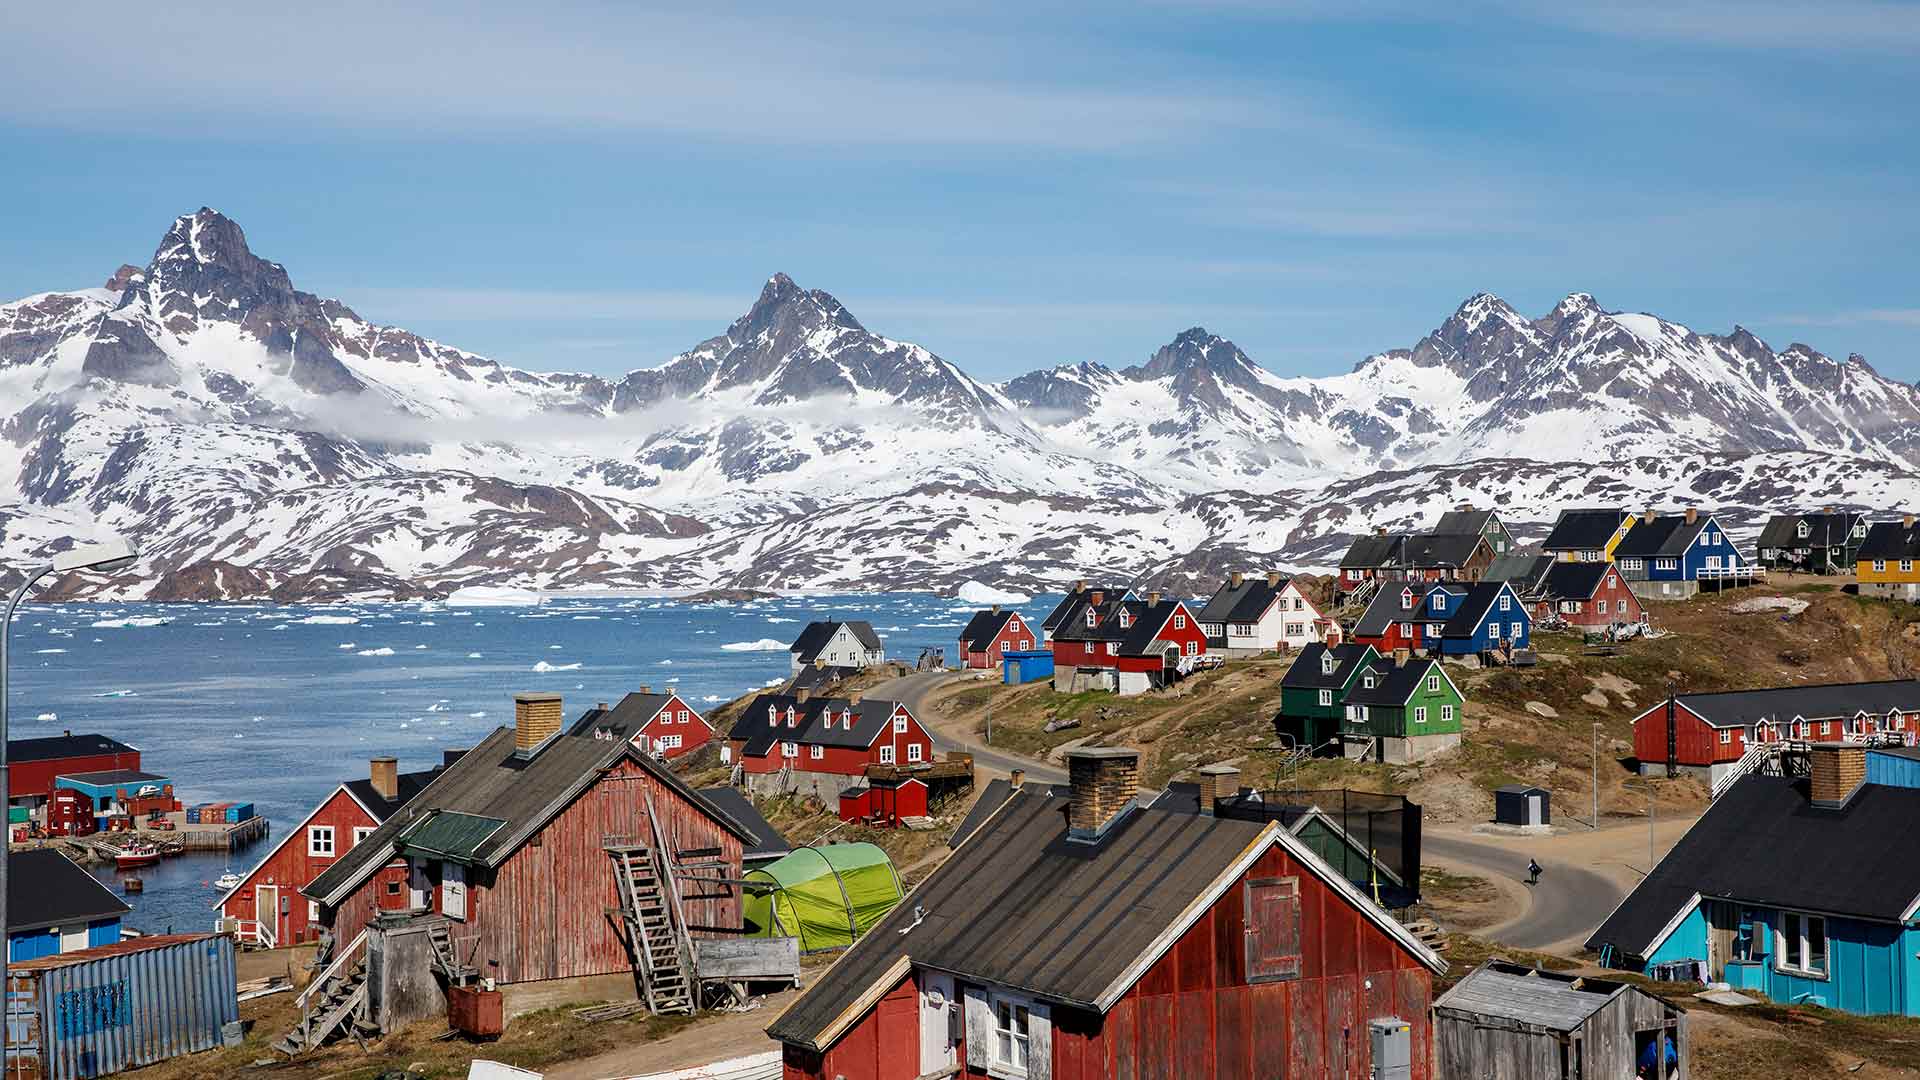 Trump confirma que considera comprar Groenlandia: «Sería un gran negocio inmobiliario»